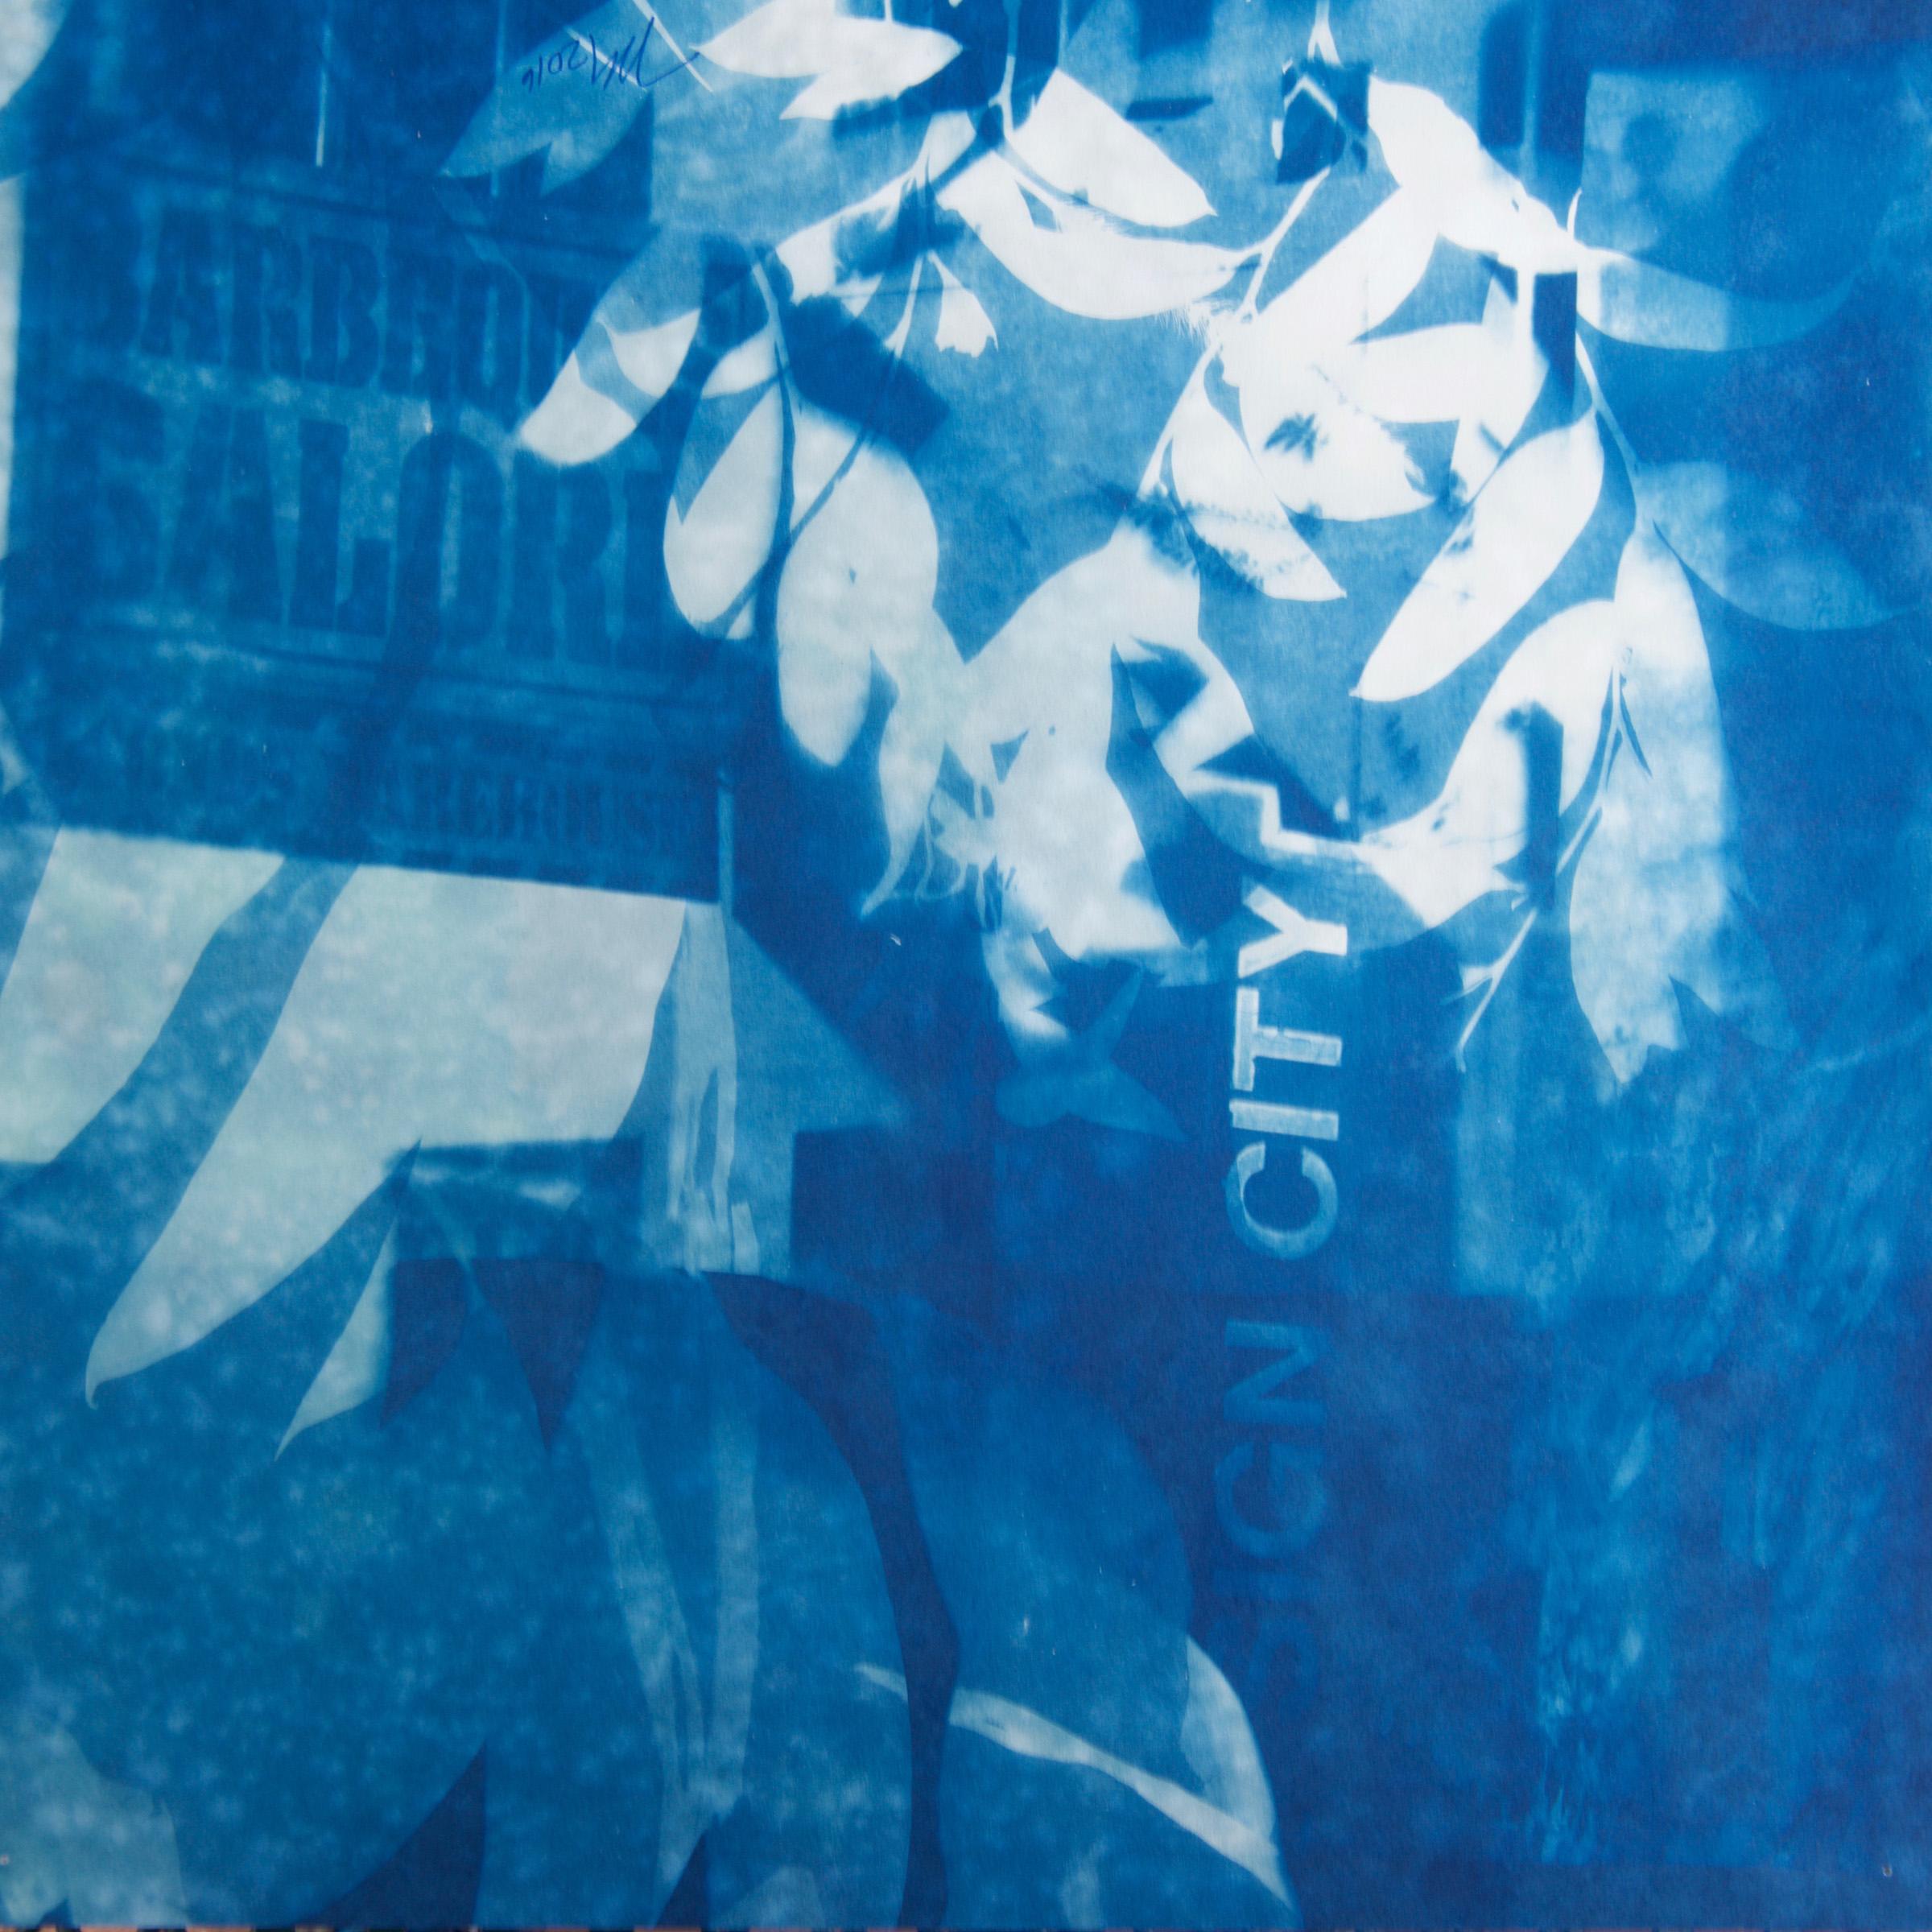 "Sign City Galore", contemporain, feuilles, bâtiment, bleu, cyanotype, photographie. - Photograph de Marie Craig